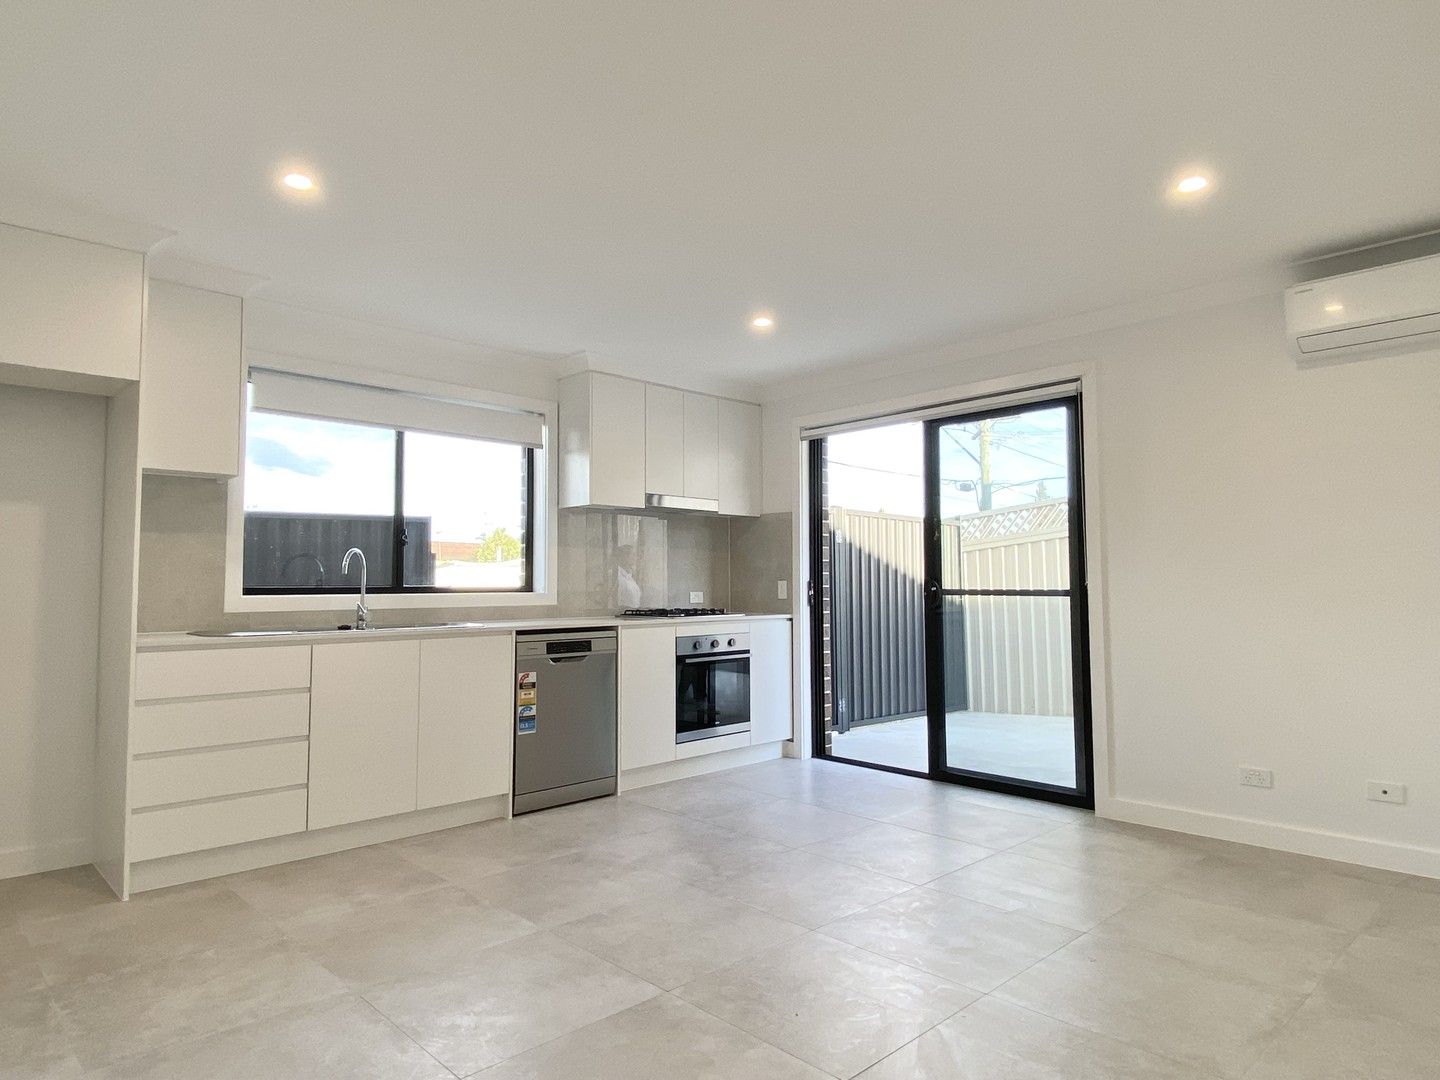 2 bedrooms Apartment / Unit / Flat in 34 Ellam Drive SEVEN HILLS NSW, 2147